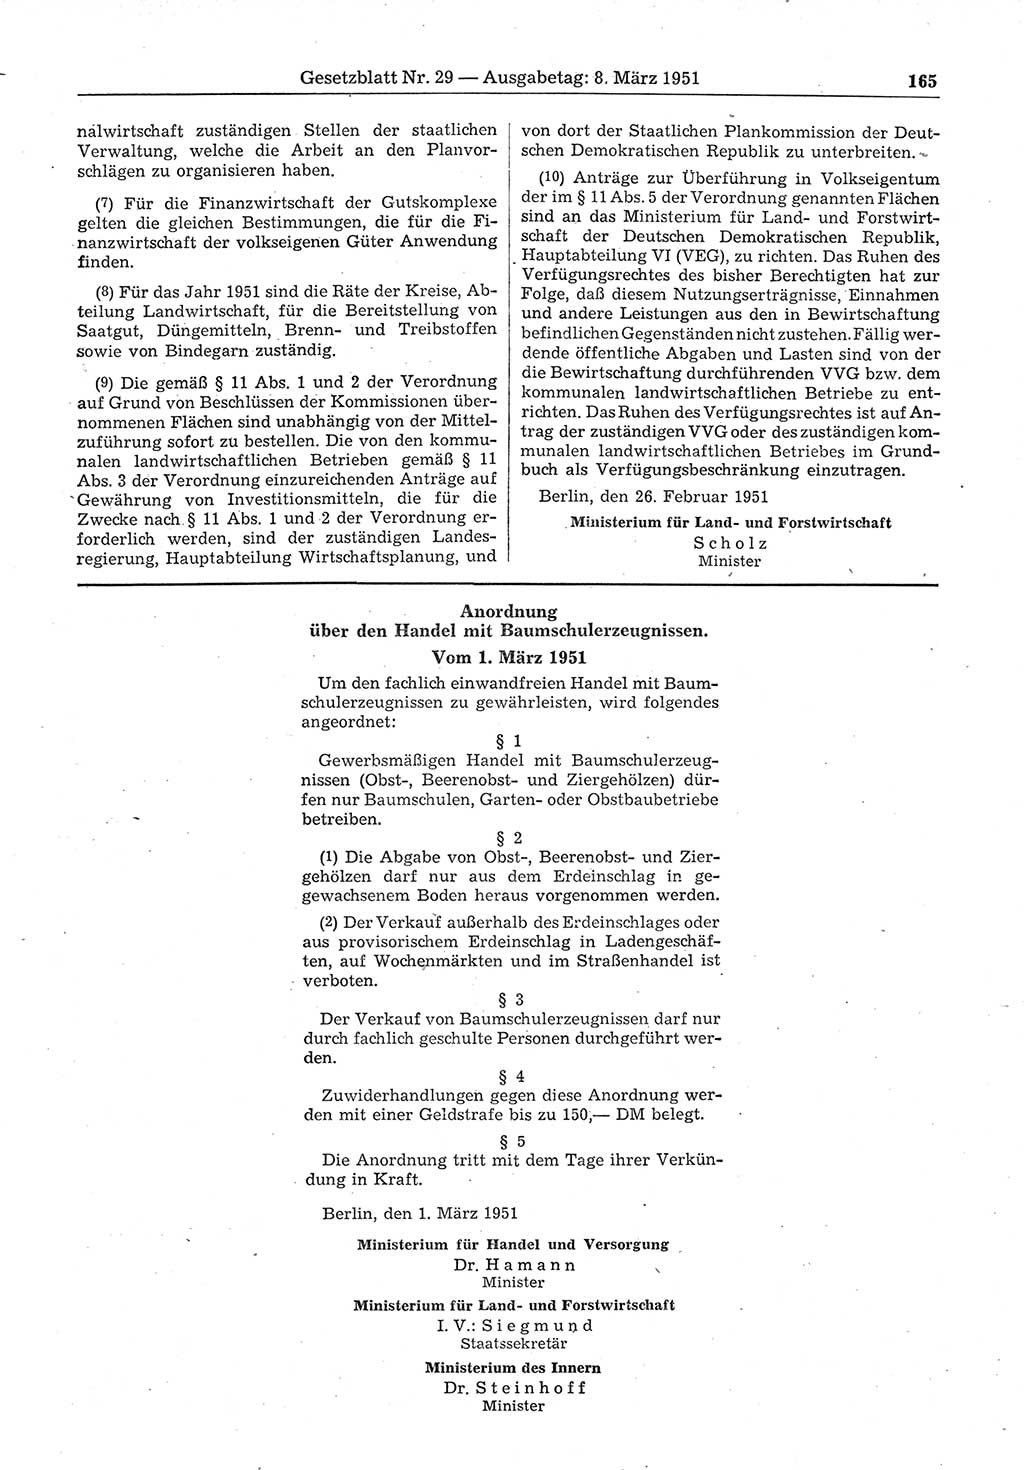 Gesetzblatt (GBl.) der Deutschen Demokratischen Republik (DDR) 1951, Seite 165 (GBl. DDR 1951, S. 165)